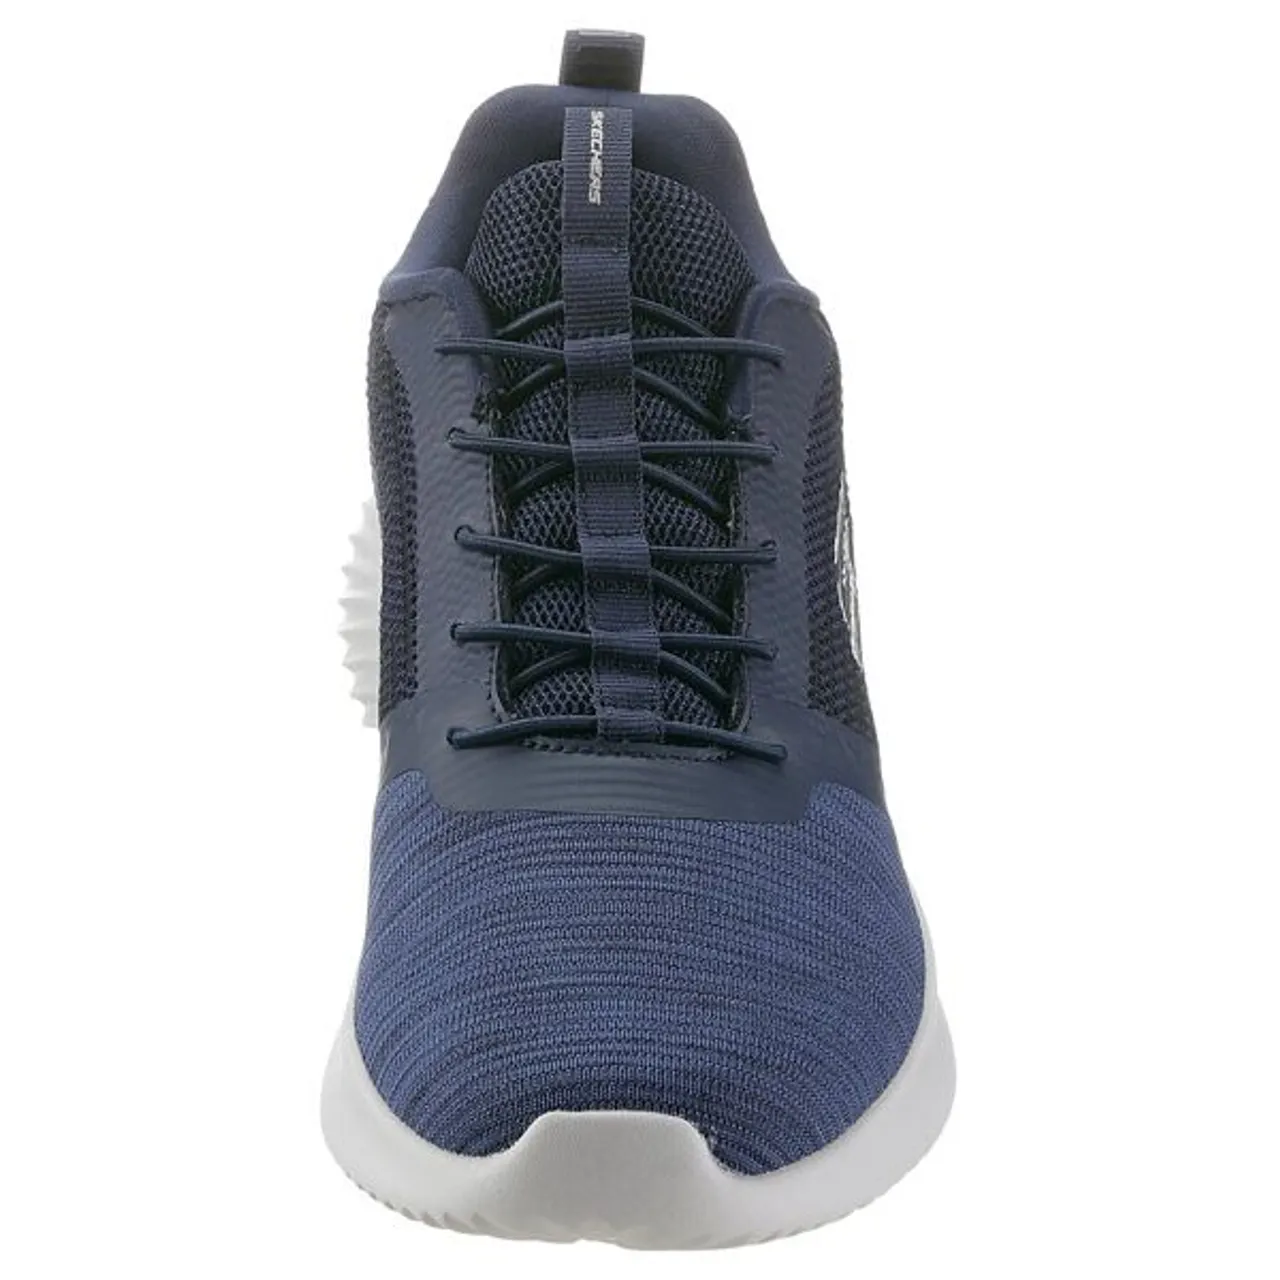 Slip-On Sneaker SKECHERS "BOUNDER" Gr. 40, blau (navy) Herren Schuhe Stoffschuhe Slipper, Sommerschuh, Freizeitschuh mit leichter Laufsohle